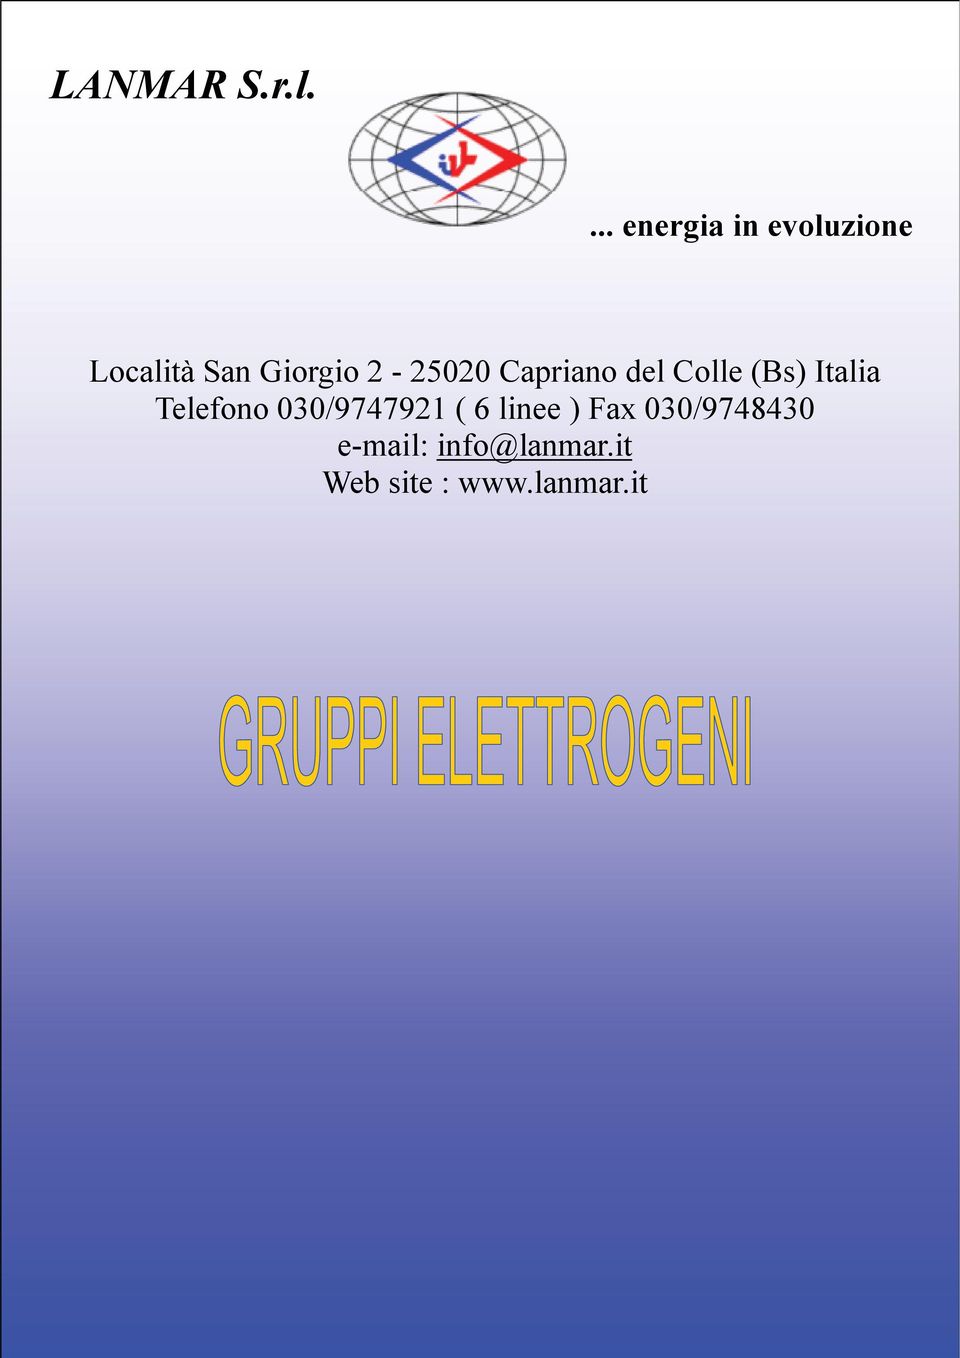 2-25020 Capriano del Colle (Bs) Italia Telefono